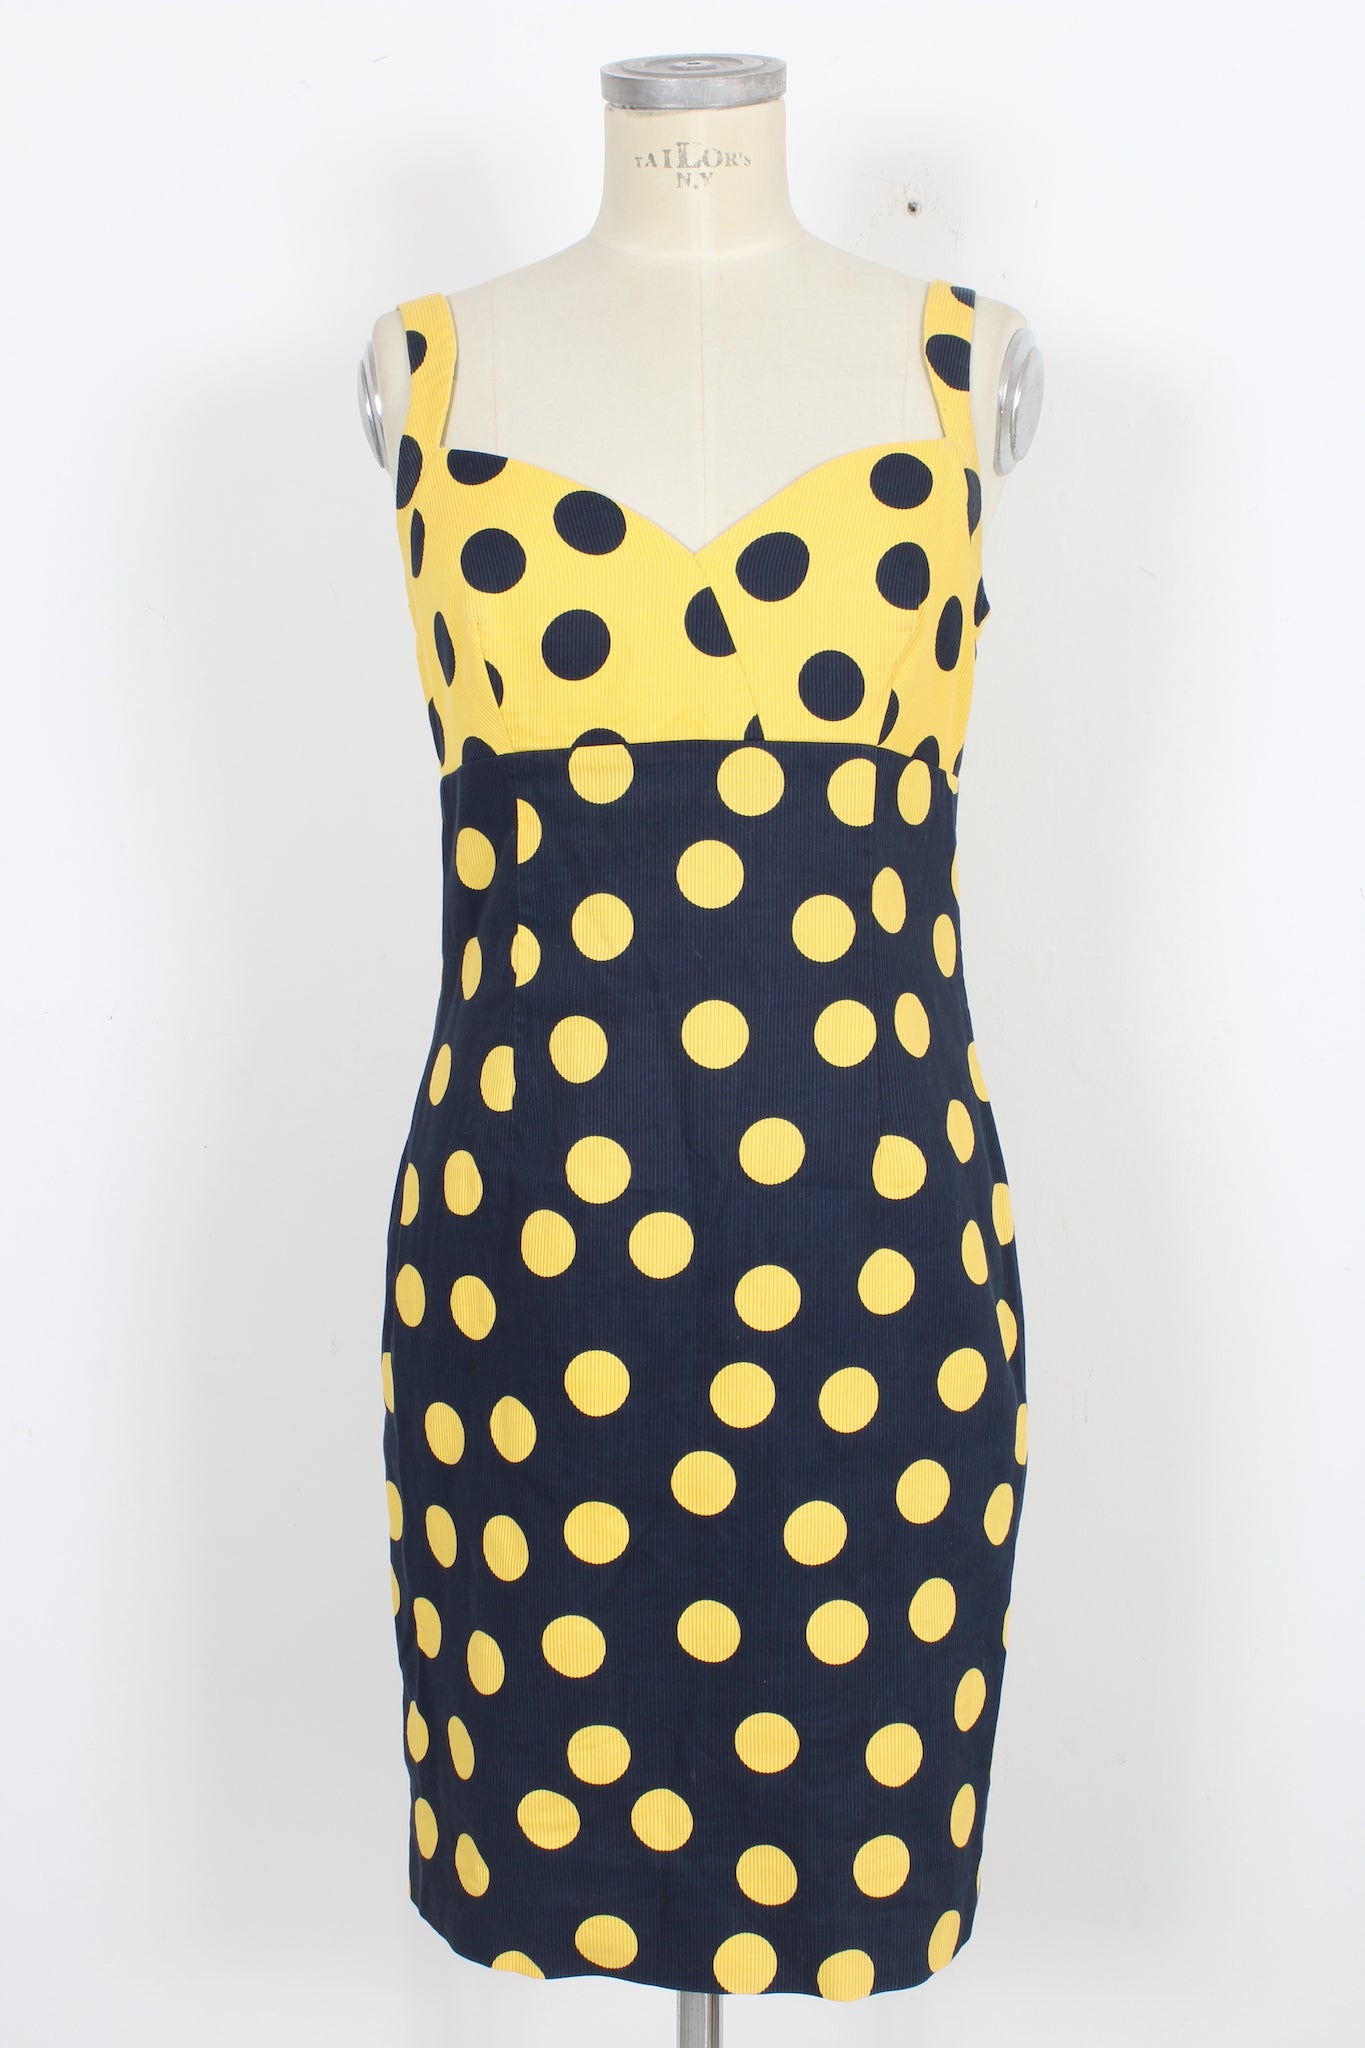 Pancaldi Yellow Blue Cotton Vintage Polka Dot Dress 1980s